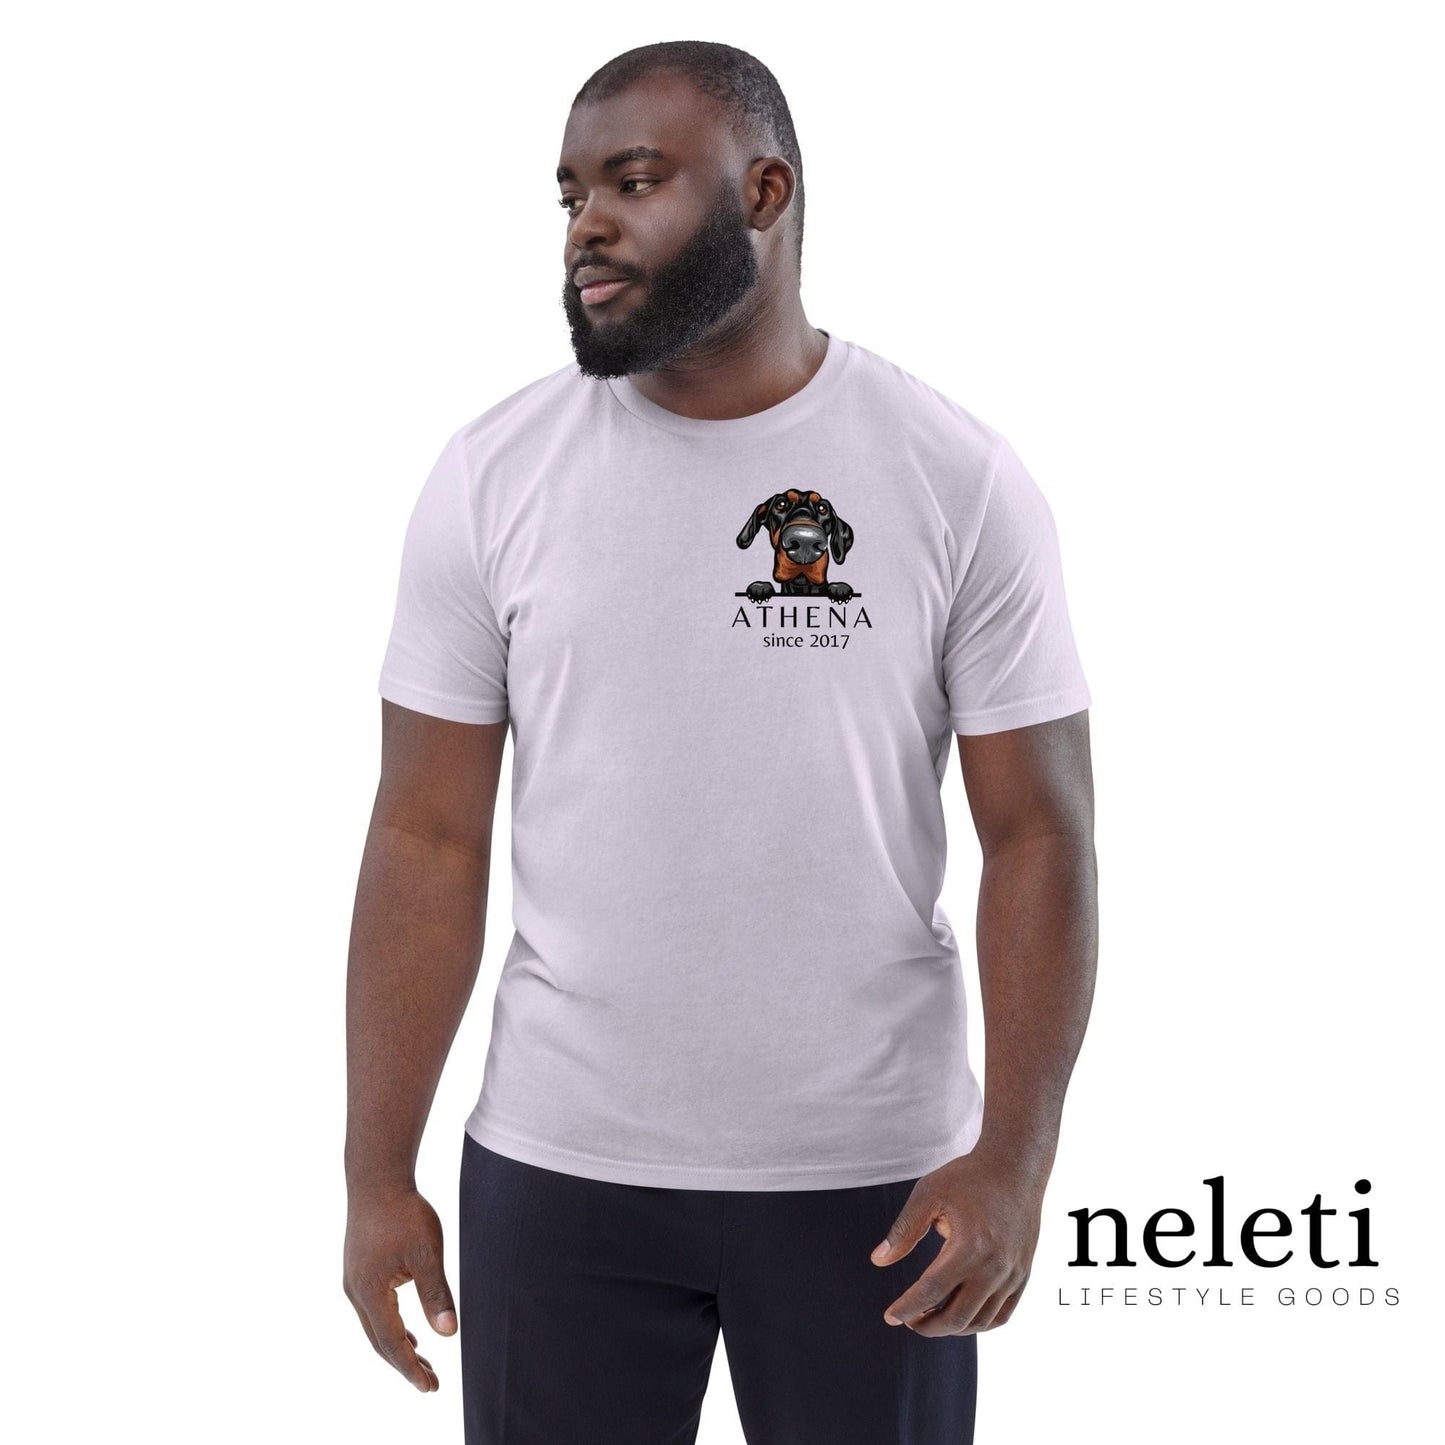 neleti.com-custom-lavender-shirt-for-dog-dad